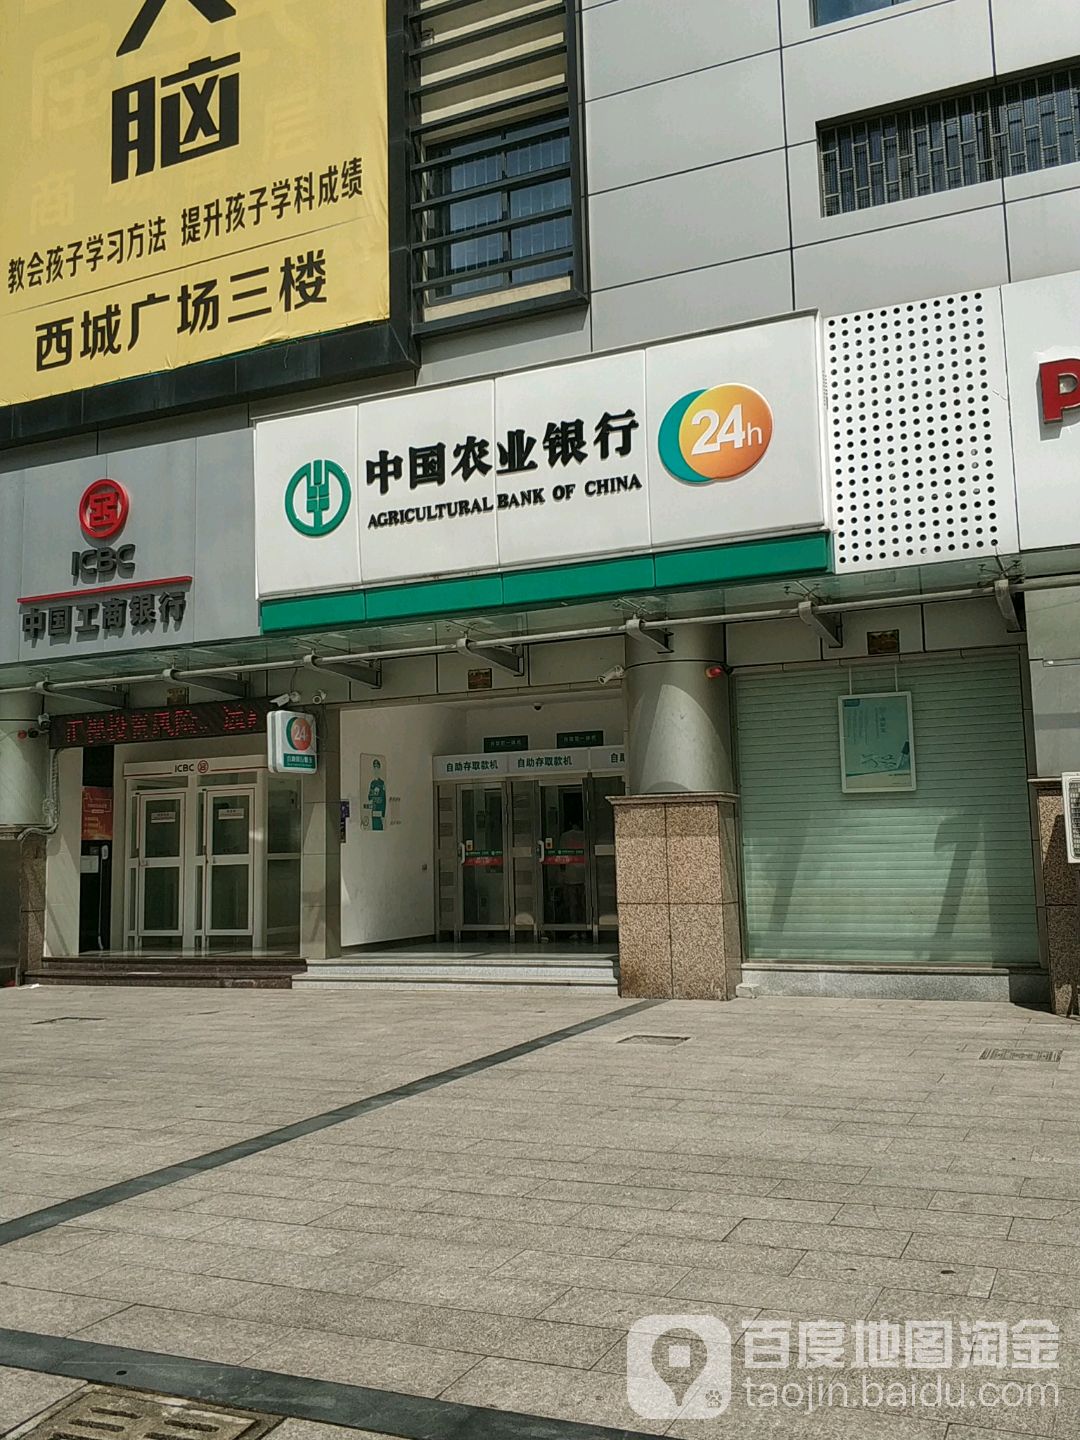 中国农业银行24小时自助银行(西区大道店)